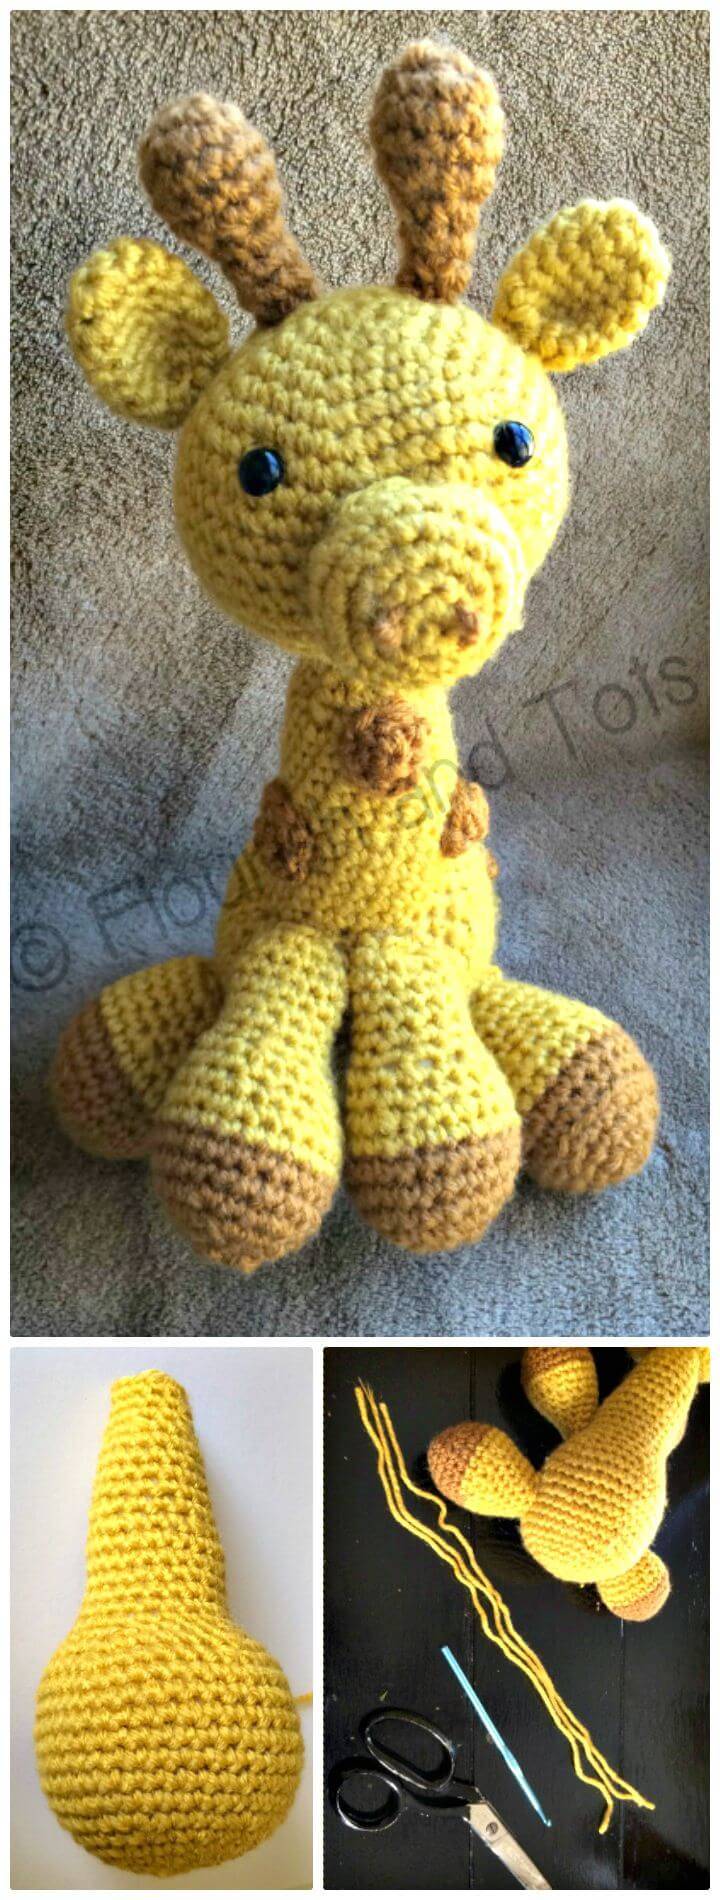 Free Crochet An Easy Giraffe Amigurumi Pattern!